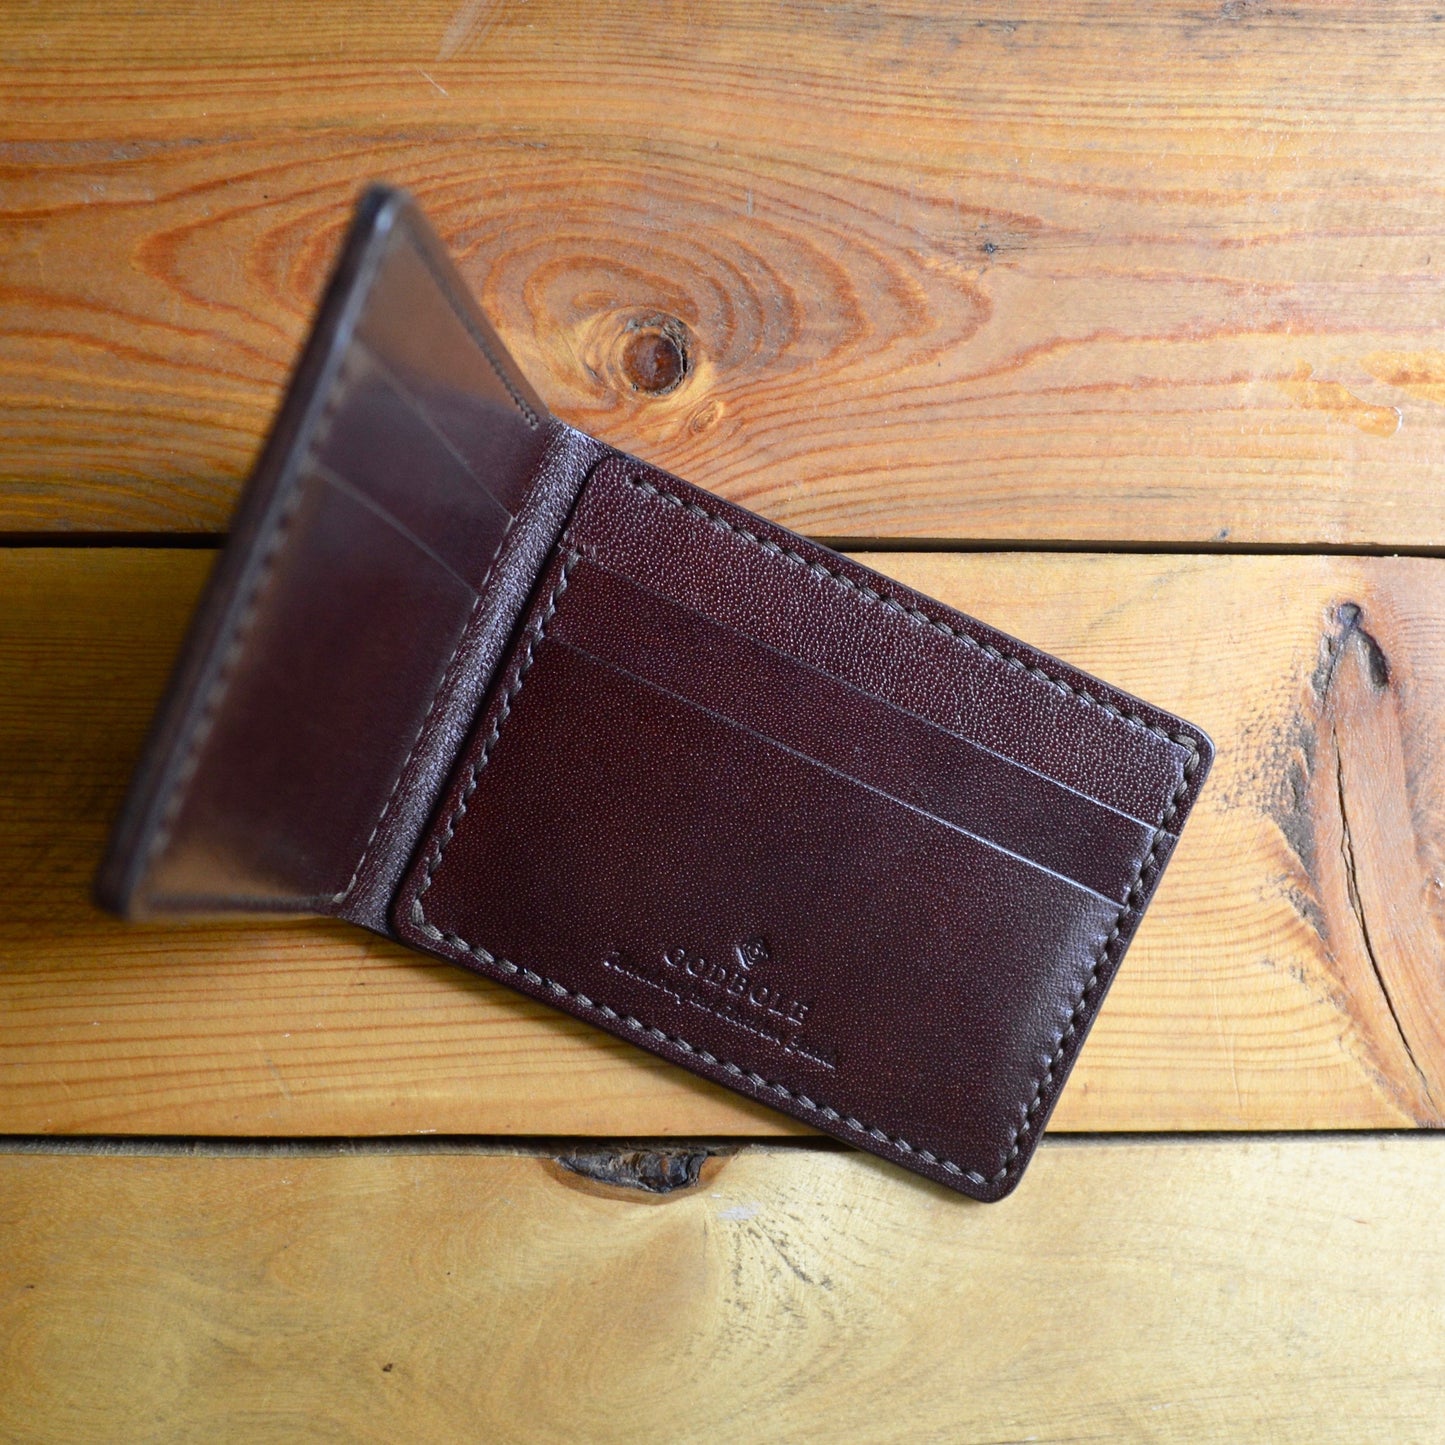 Mini Classic Wallet - Mahogany